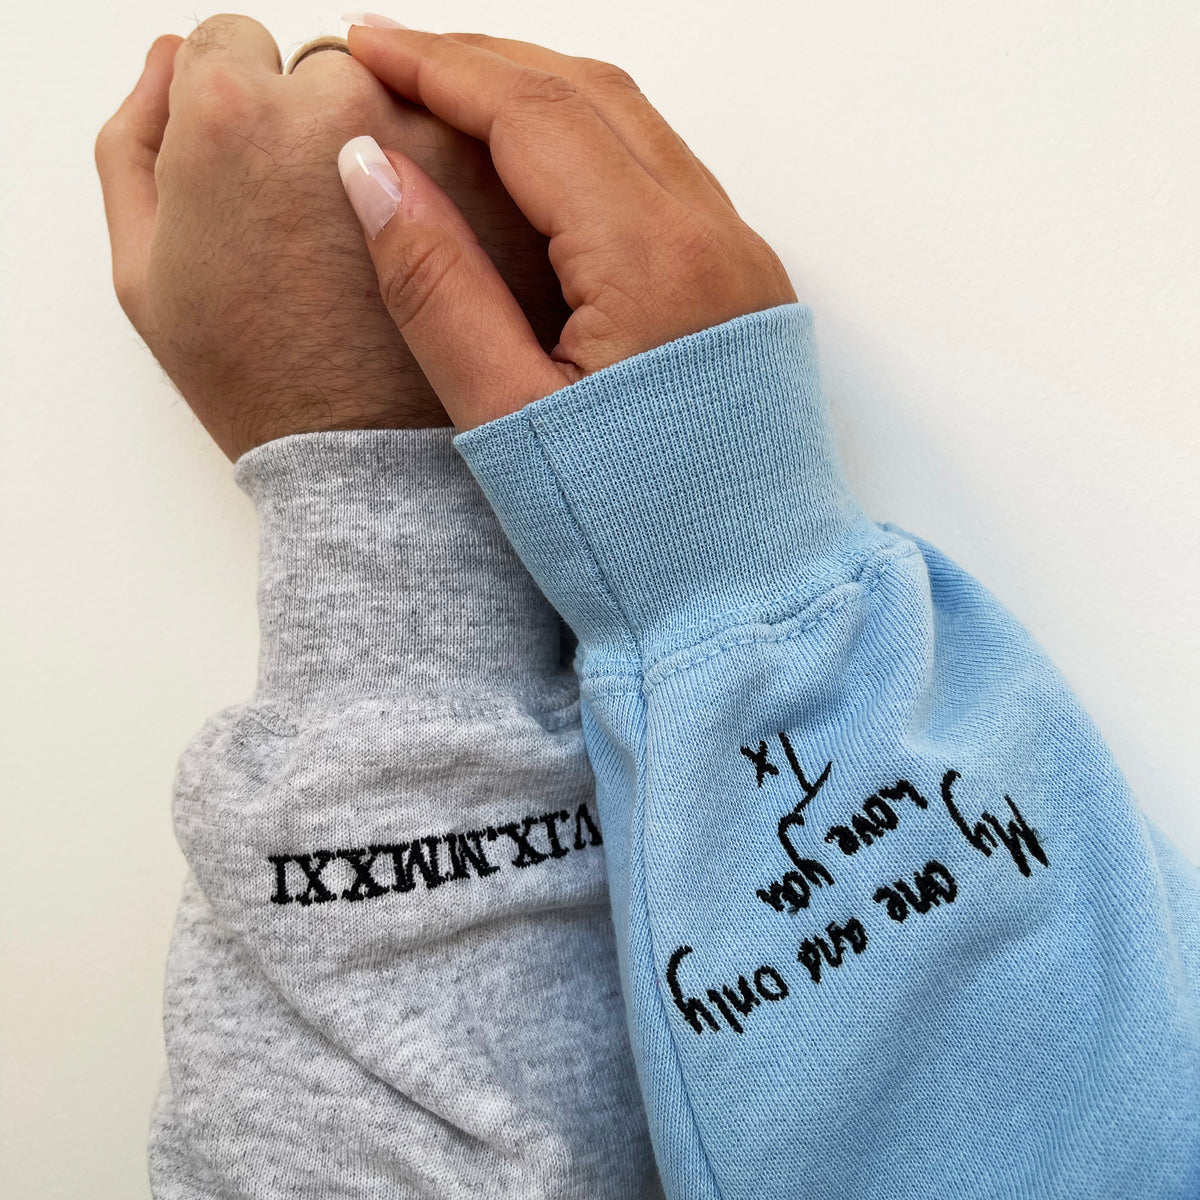 Adult hoodie personalised handwriting message